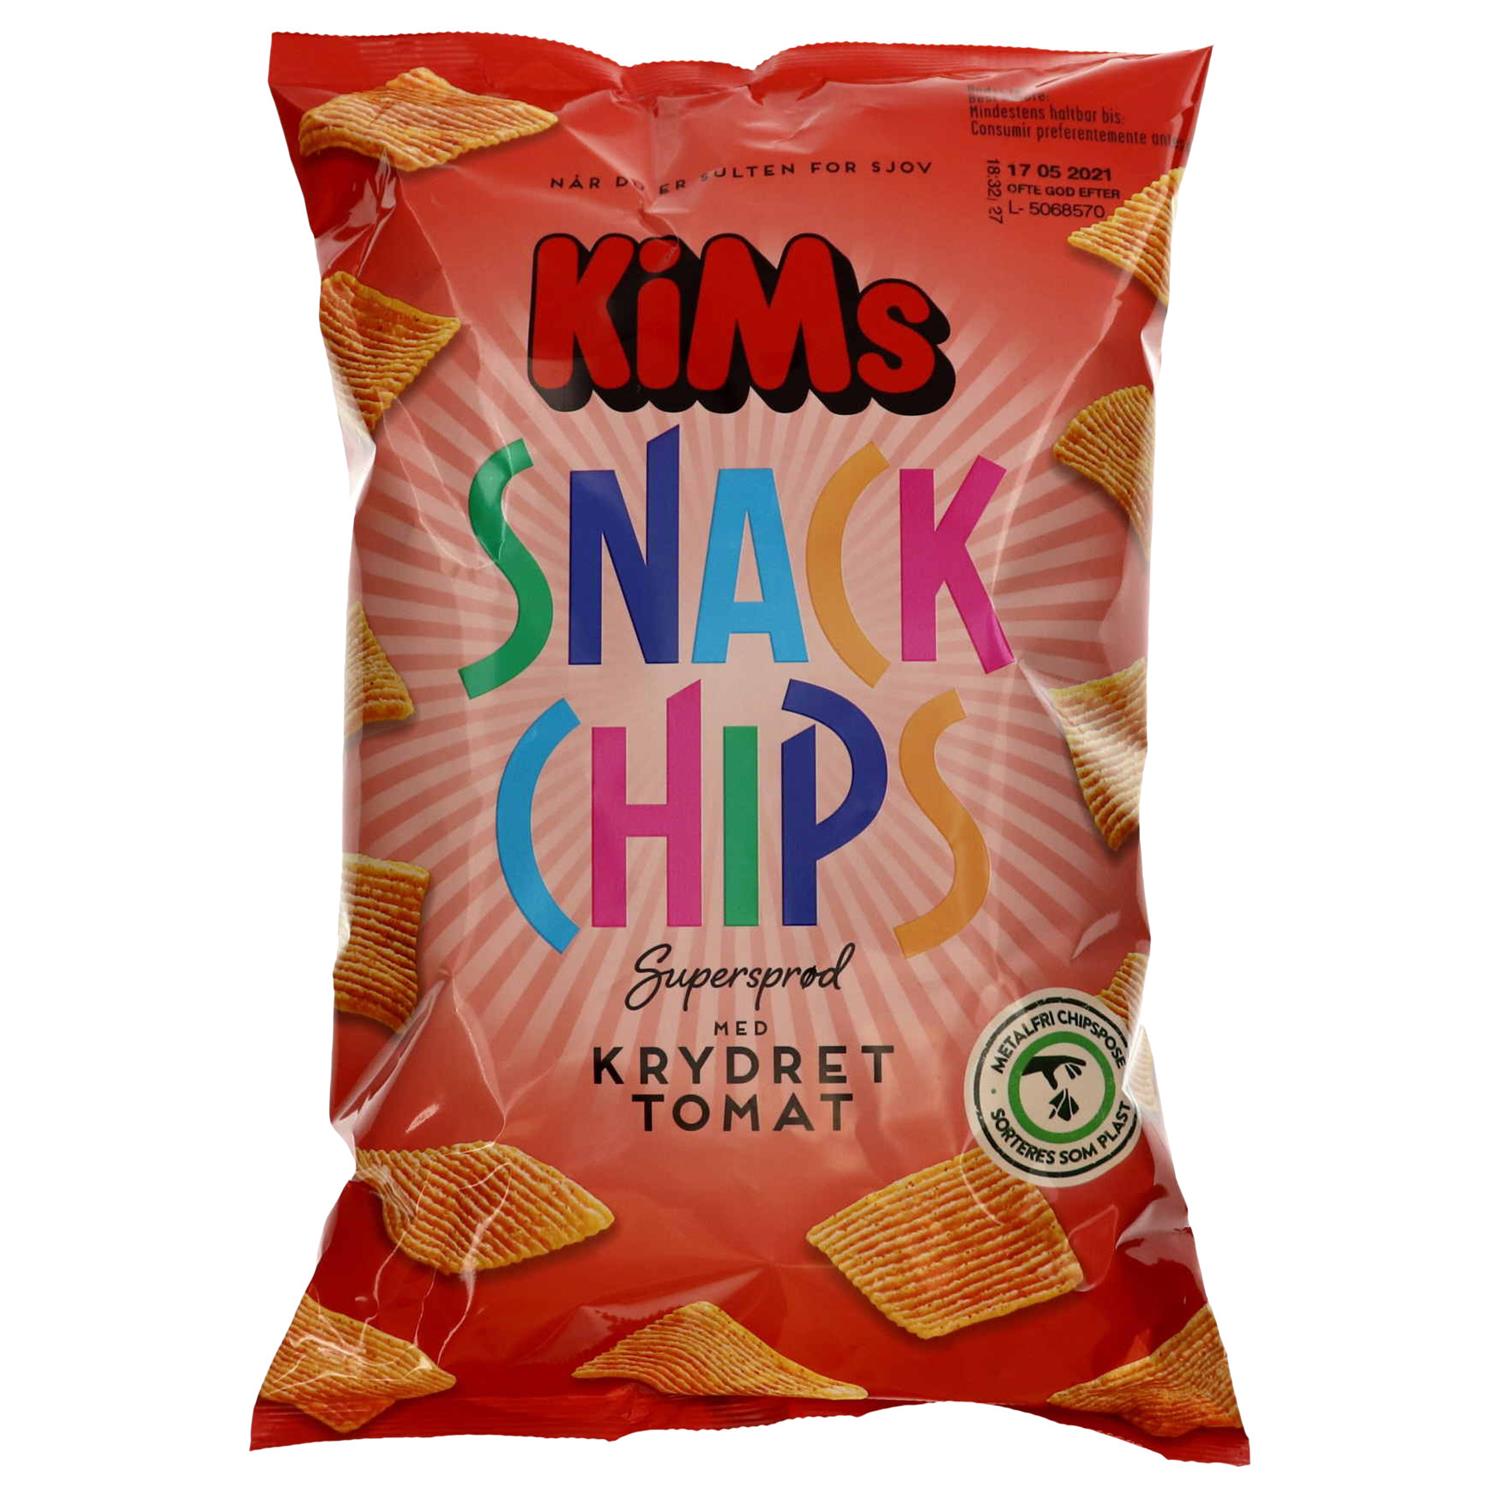 KiMs Snack Chips Krydret Tomat 160 g. - Grænsehandel til billige